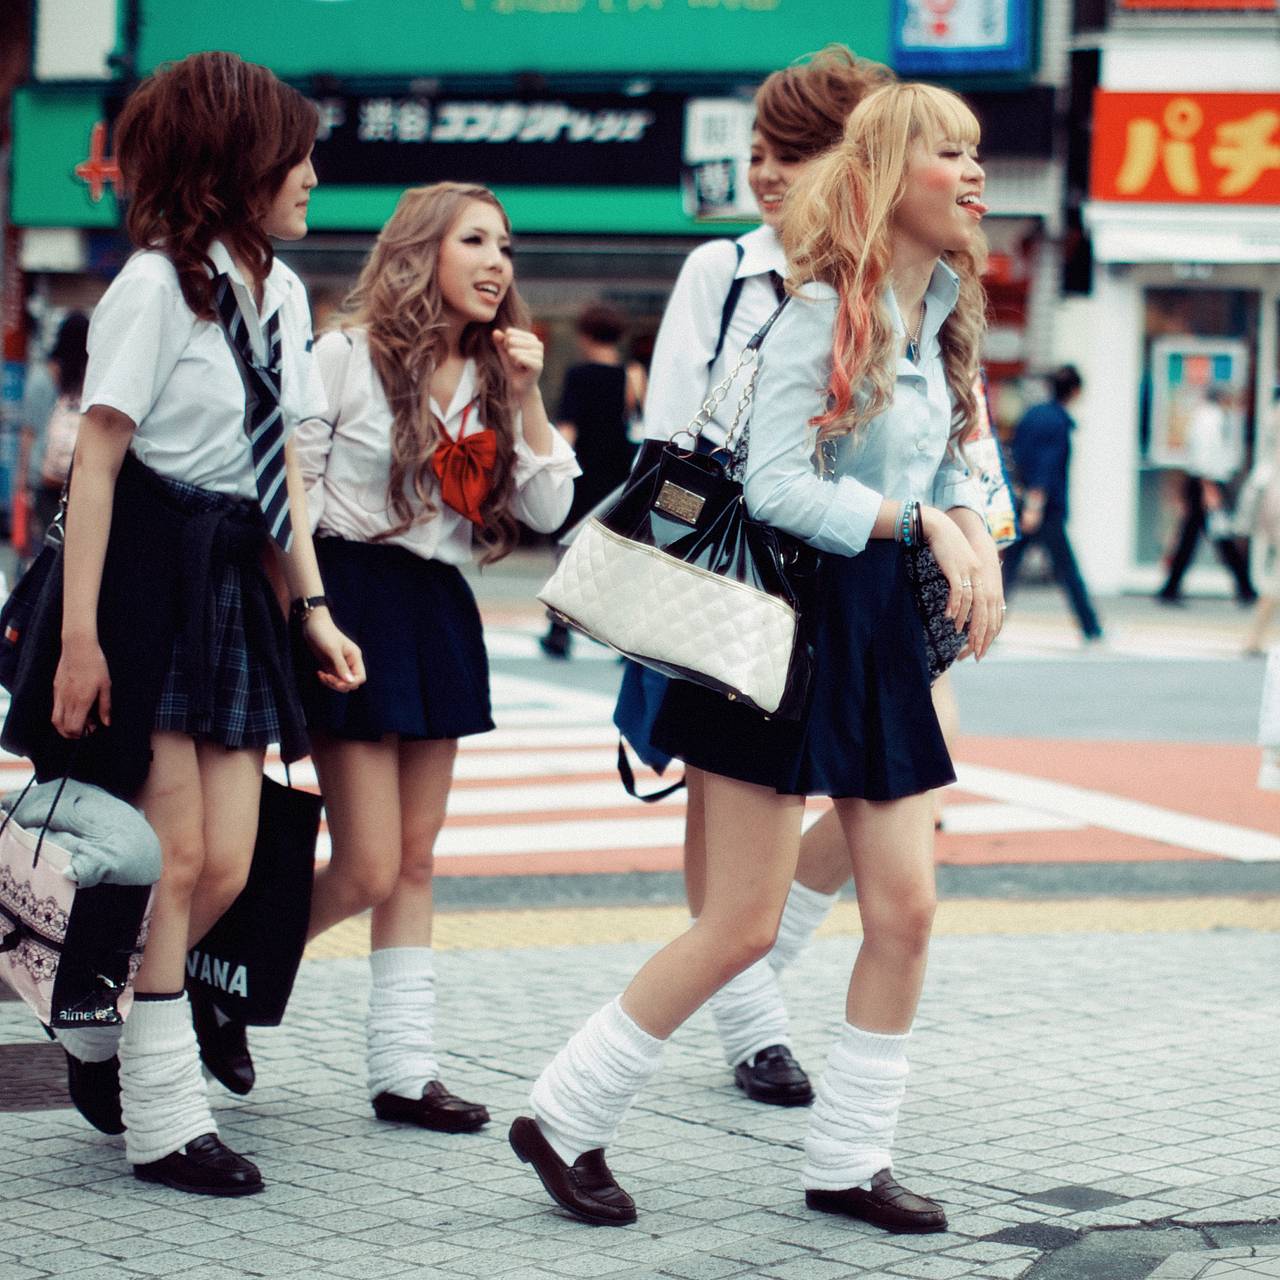 Школьная форма делает их милее» Как в Японии возник культ сексуальных  школьниц и почему девушек привлекает проституция: Общество: Мир: Lenta.ru